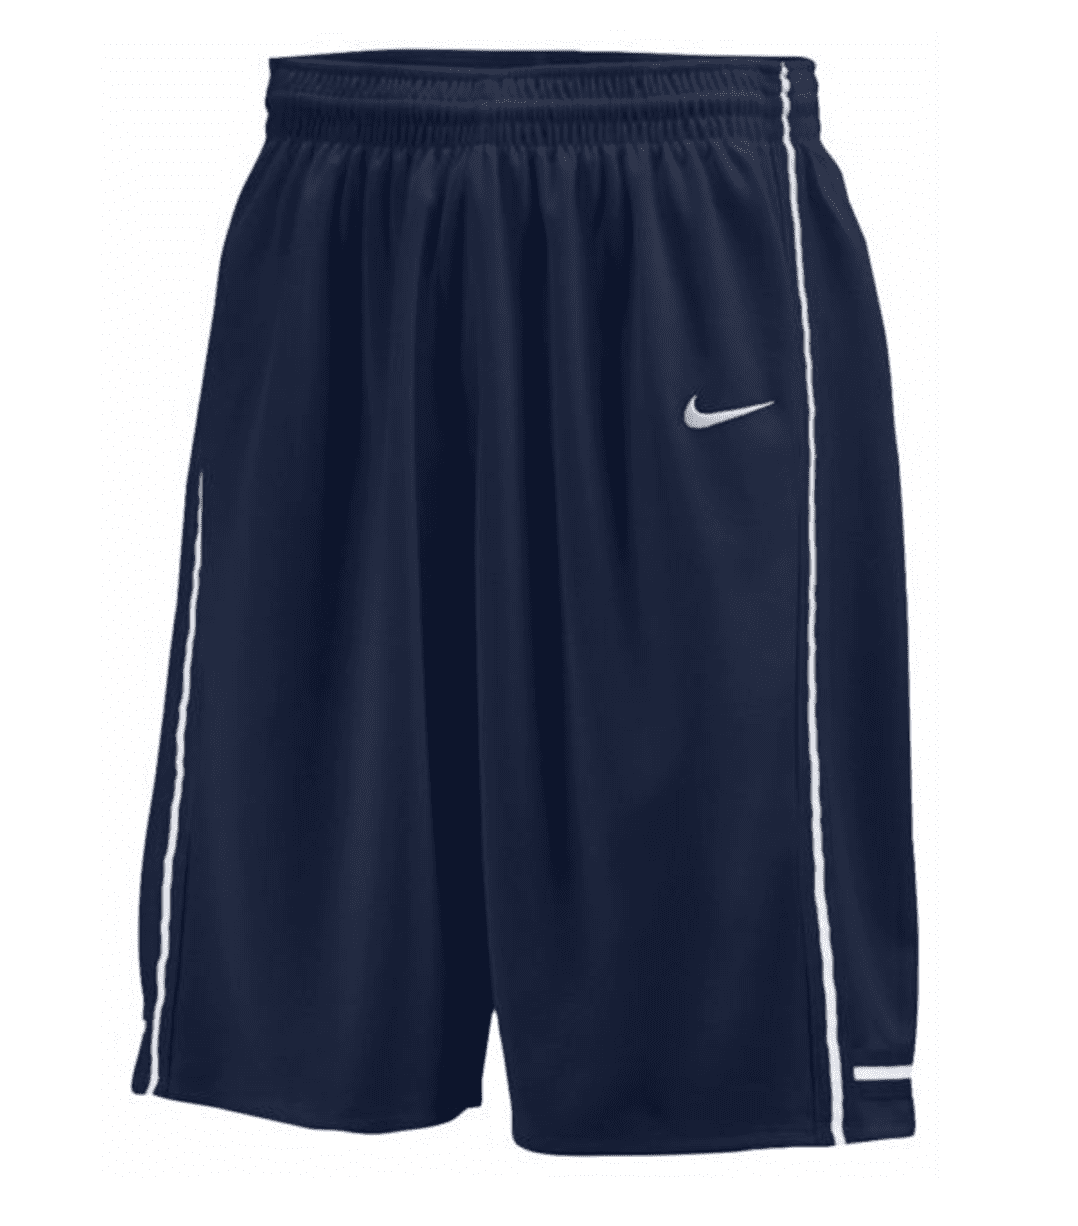 Nike - Nike Men's Baseline Basketball 11.25